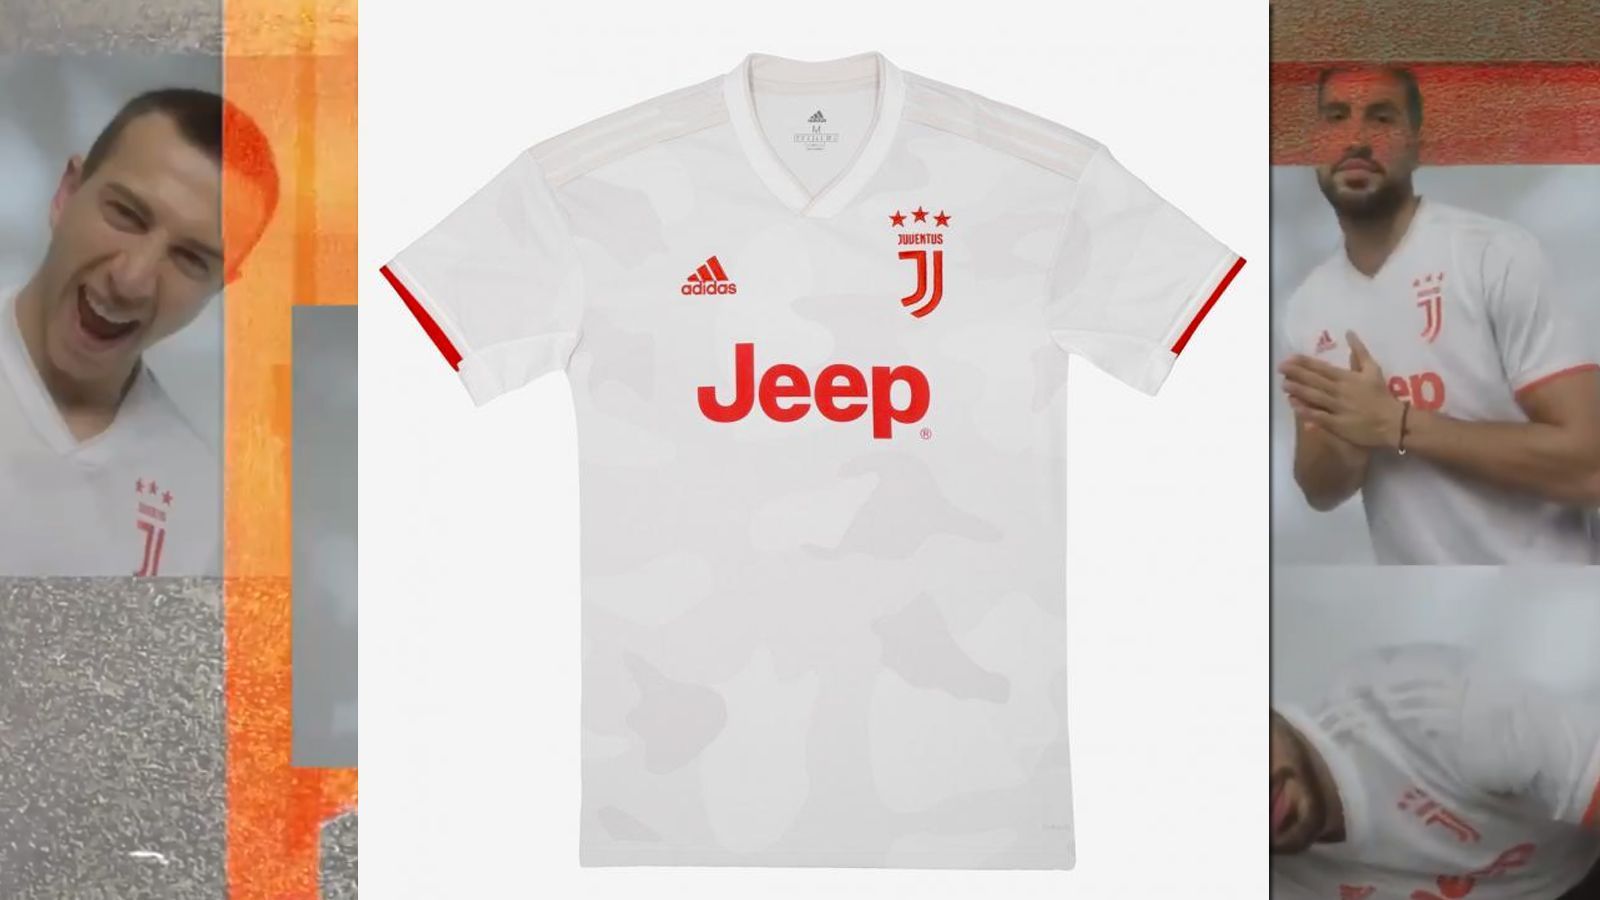 
                <strong>Juventus Turin </strong><br>
                Juventus Turin hat sein neues Auswärtstrikot vorgestellt. Cristiano Ronaldo & Co. werden in der kommenden Saison in fremden Stadien in Weiß und Orange auflaufen. Der leichte Camouflage-Pixel-Effekt ist an der Architektur rund um das Allianz Stadium angelehnt.
              